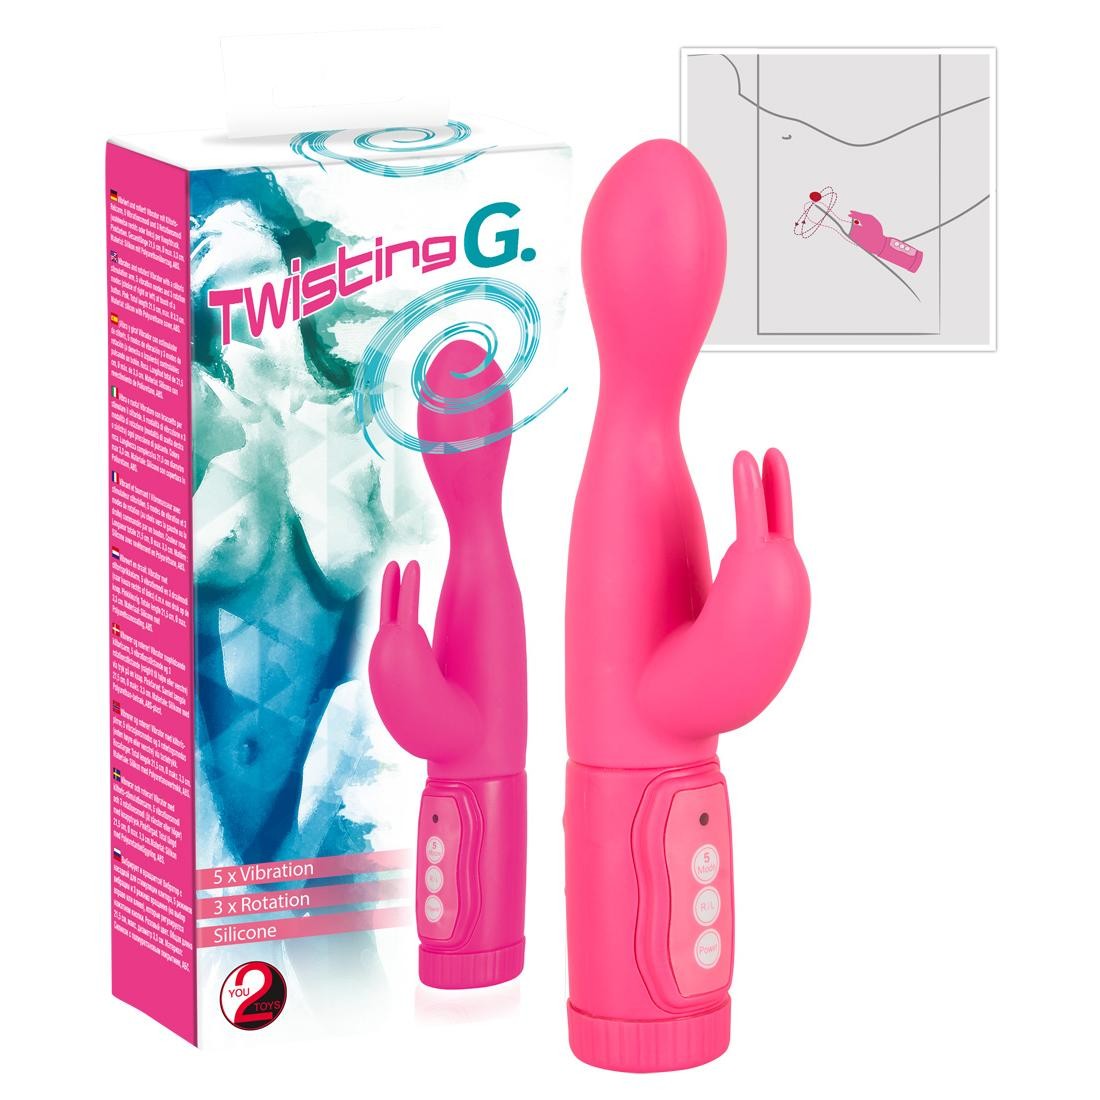  You2Toys  -  Twisting  G.  -  Vibrator  mit  Klitorisreizer  und  Rotation 